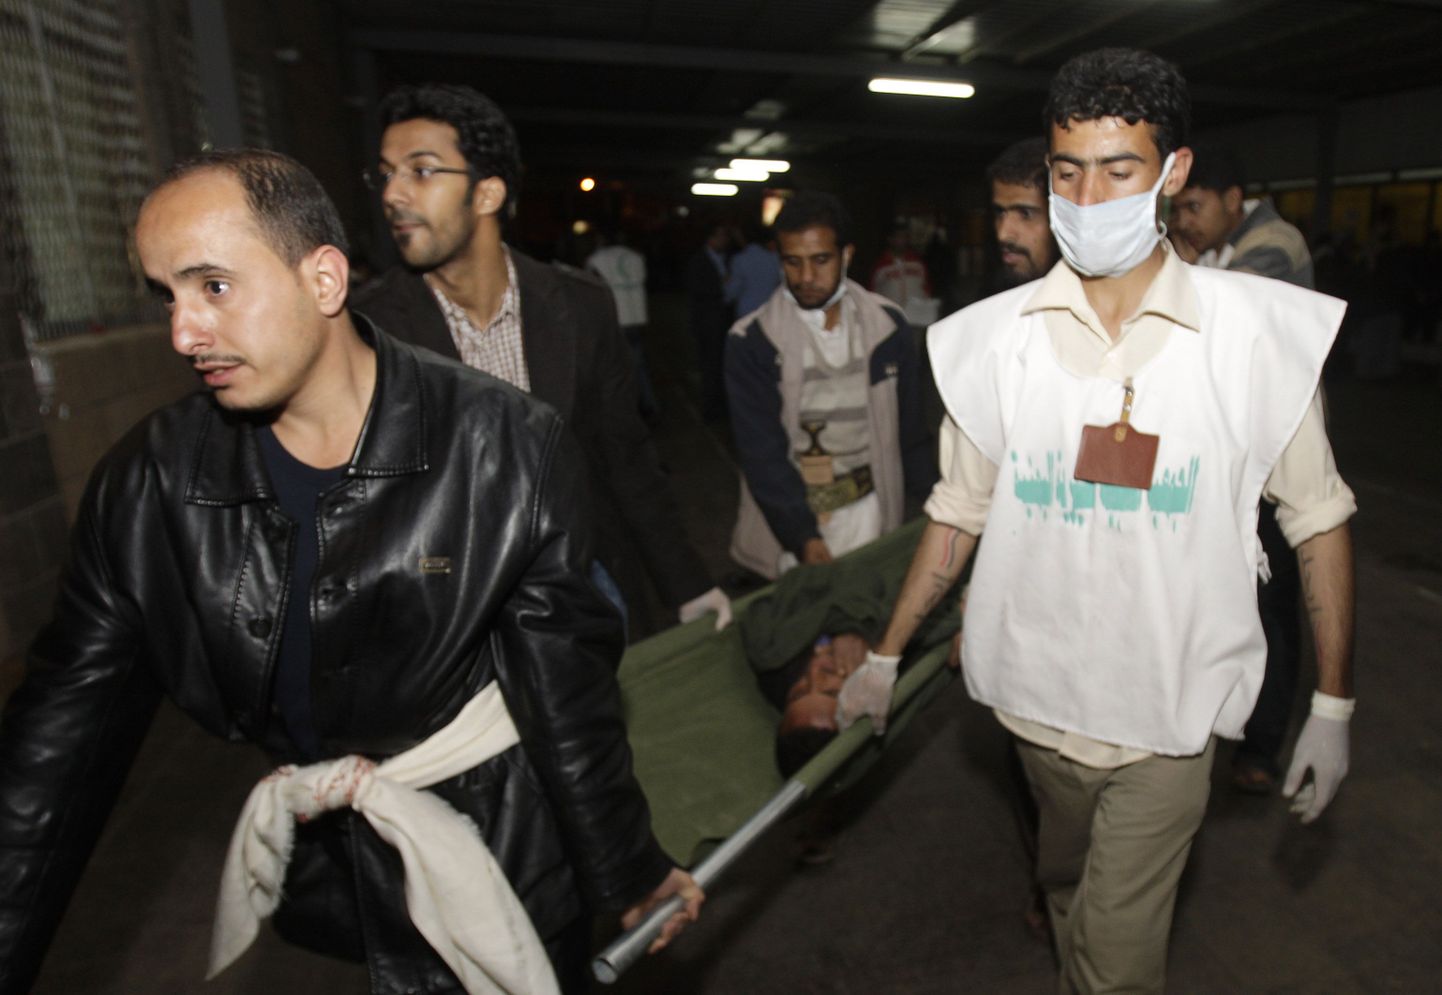 Sanaa ülikooli juures toimunud tulistamises sai 65 inimest kannatada